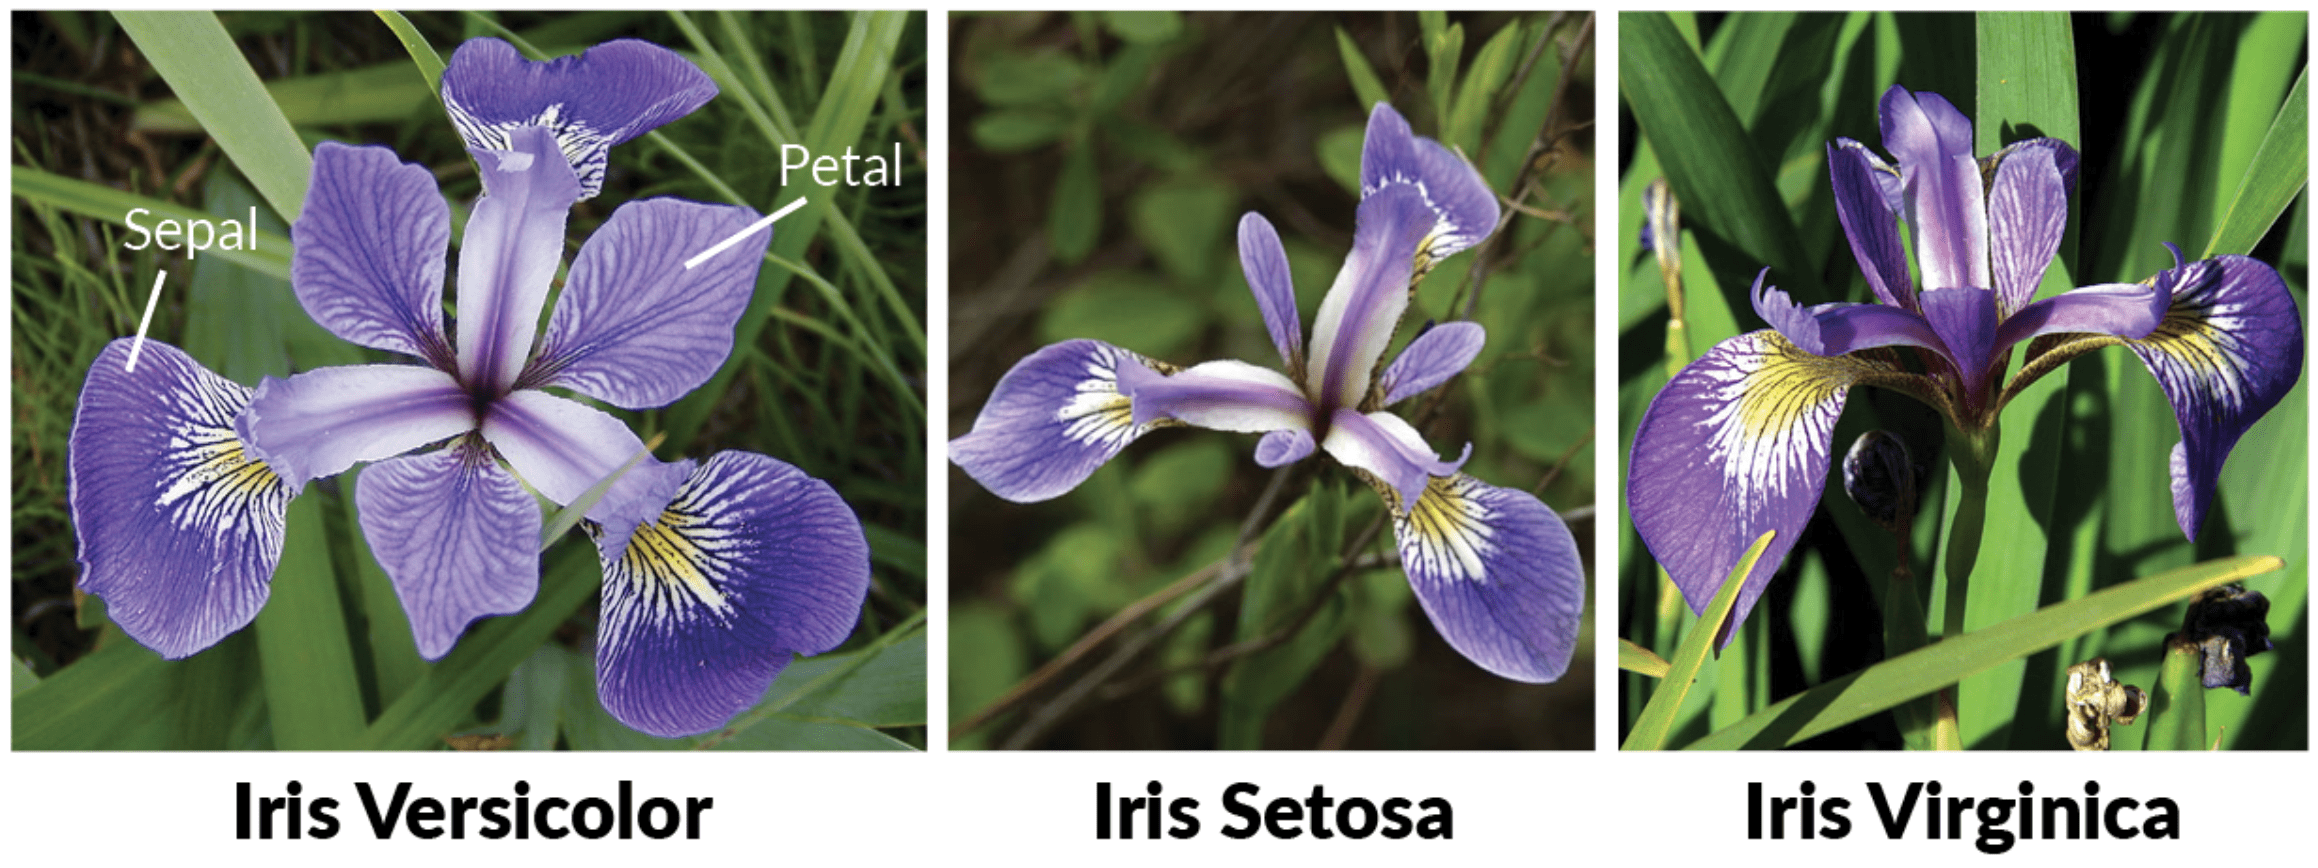 Três tipos da flor Iris: Versicolor, Setosa e Virginica.